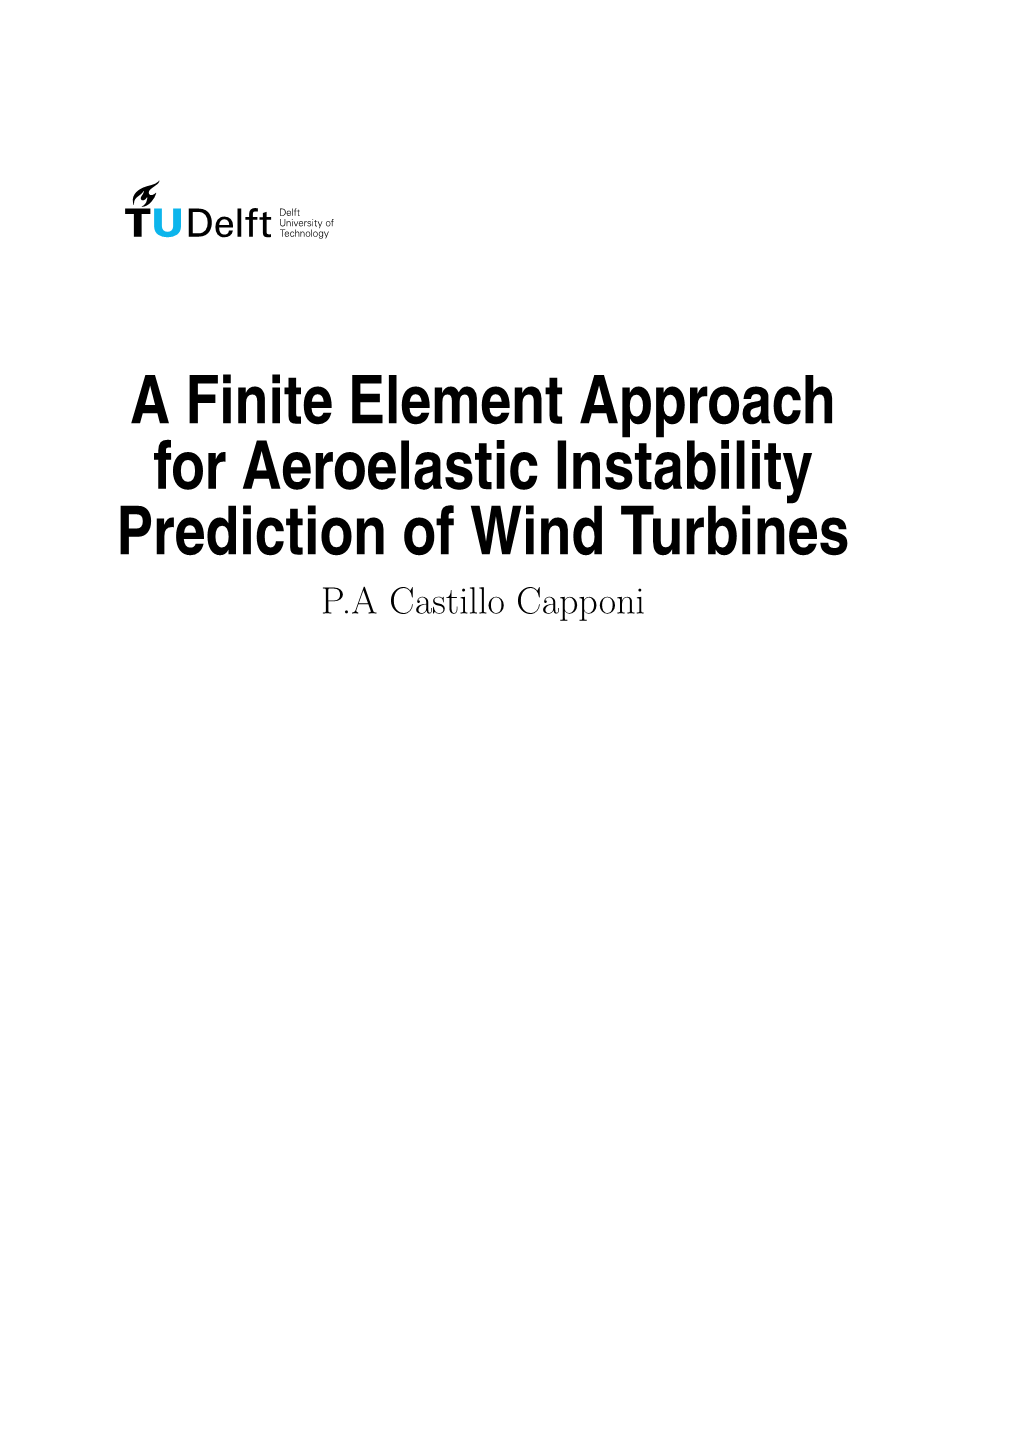 A Finite Element Approach for Aeroelastic Instability Prediction of Wind Turbines P.A Castillo Capponi